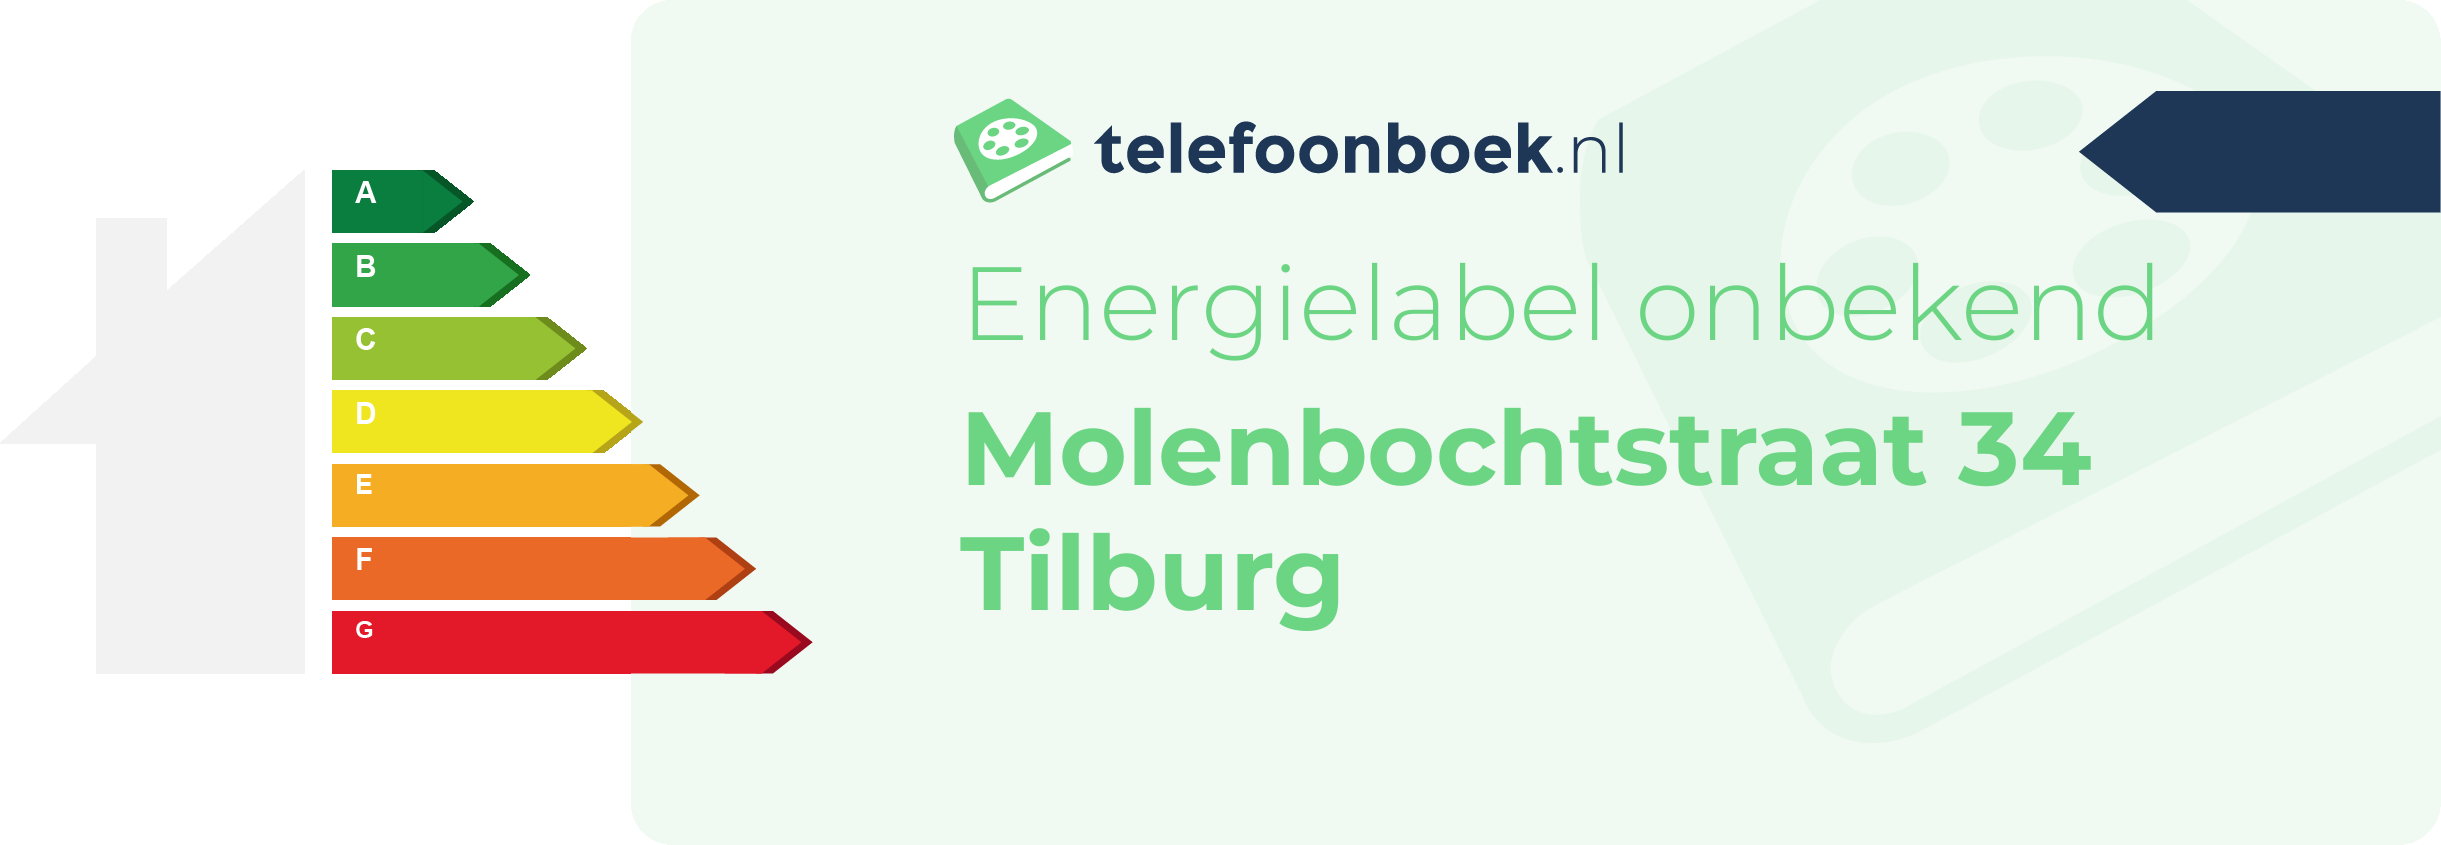 Energielabel Molenbochtstraat 34 Tilburg